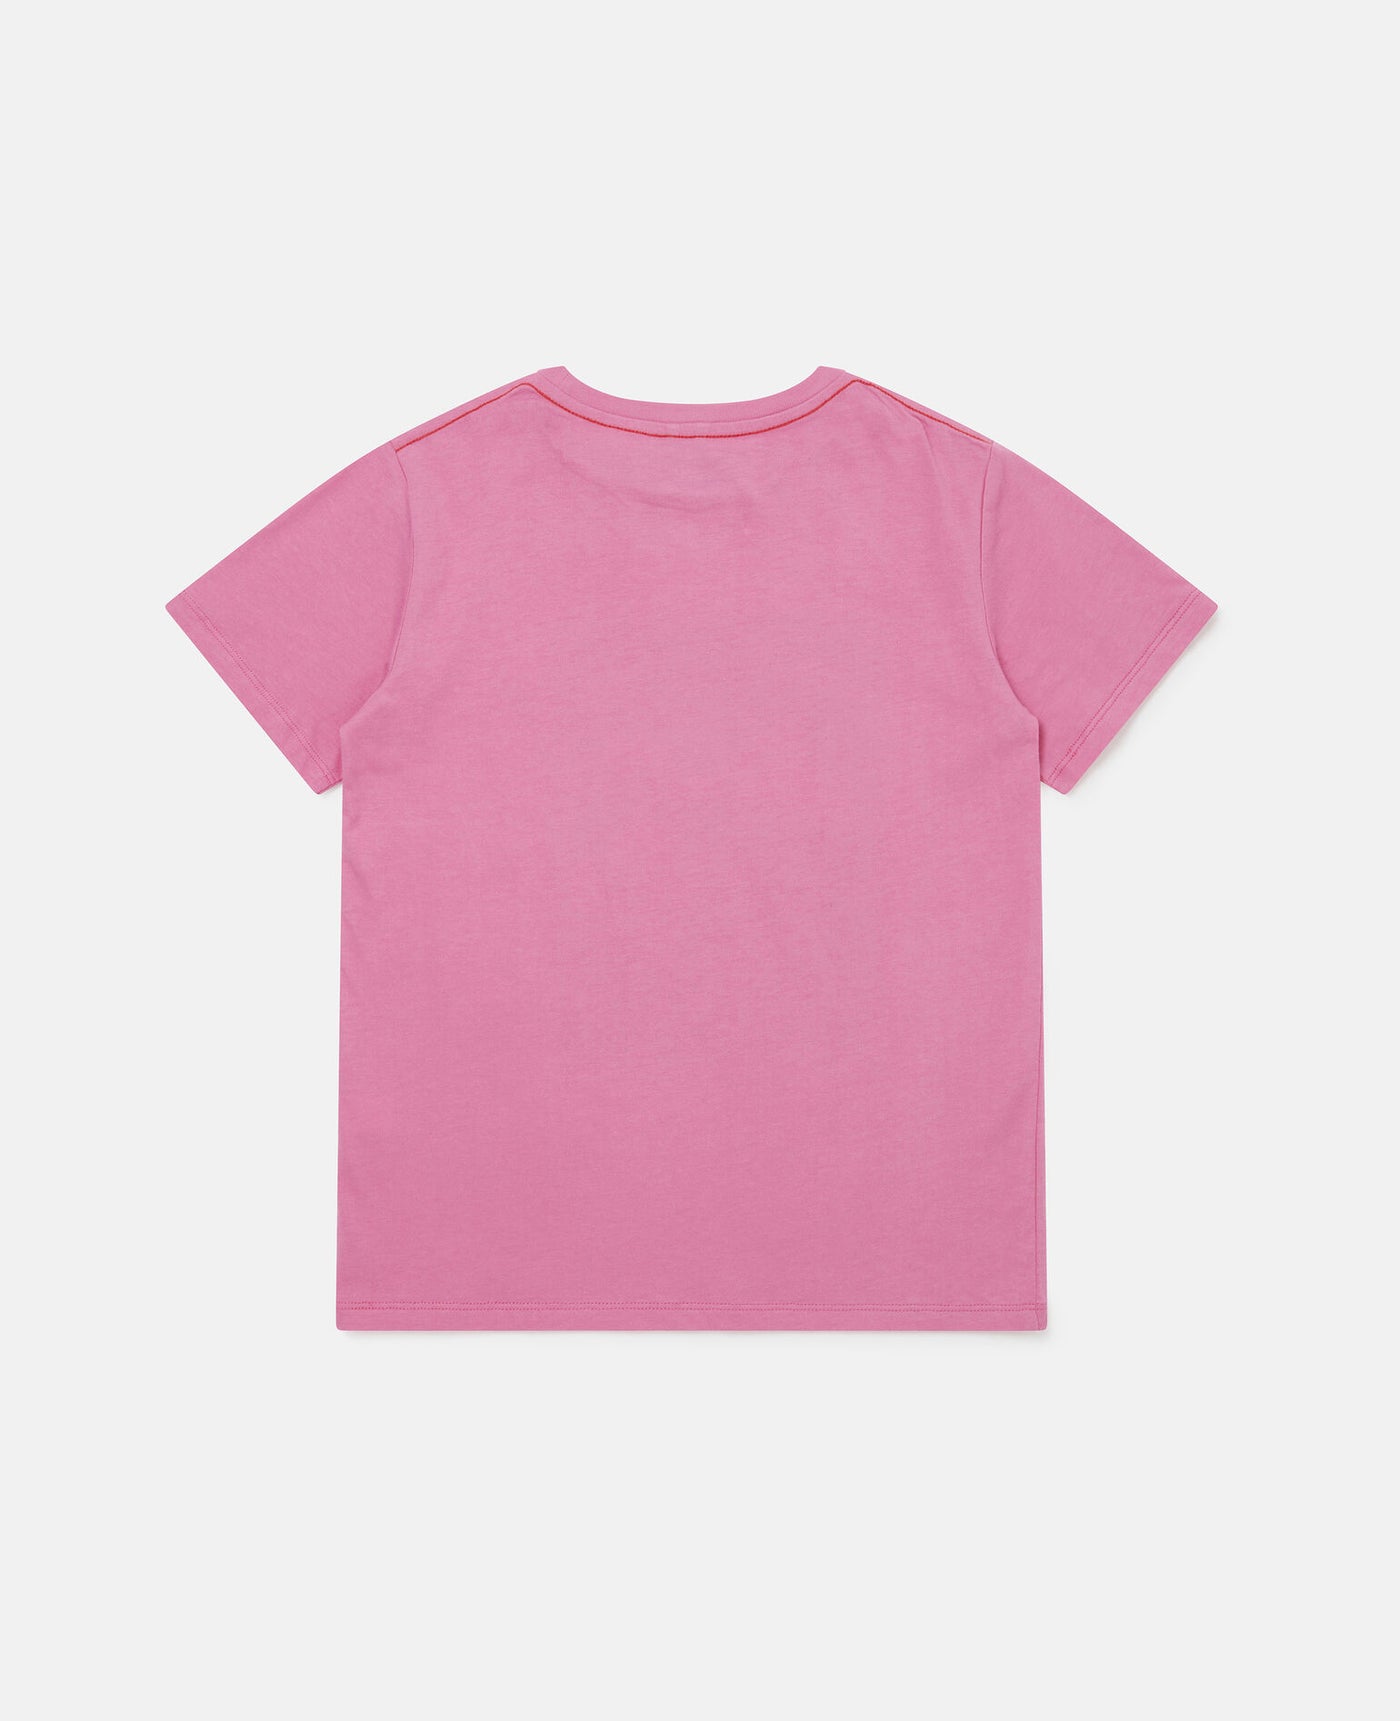 Paris Print Cotton T-Shirt